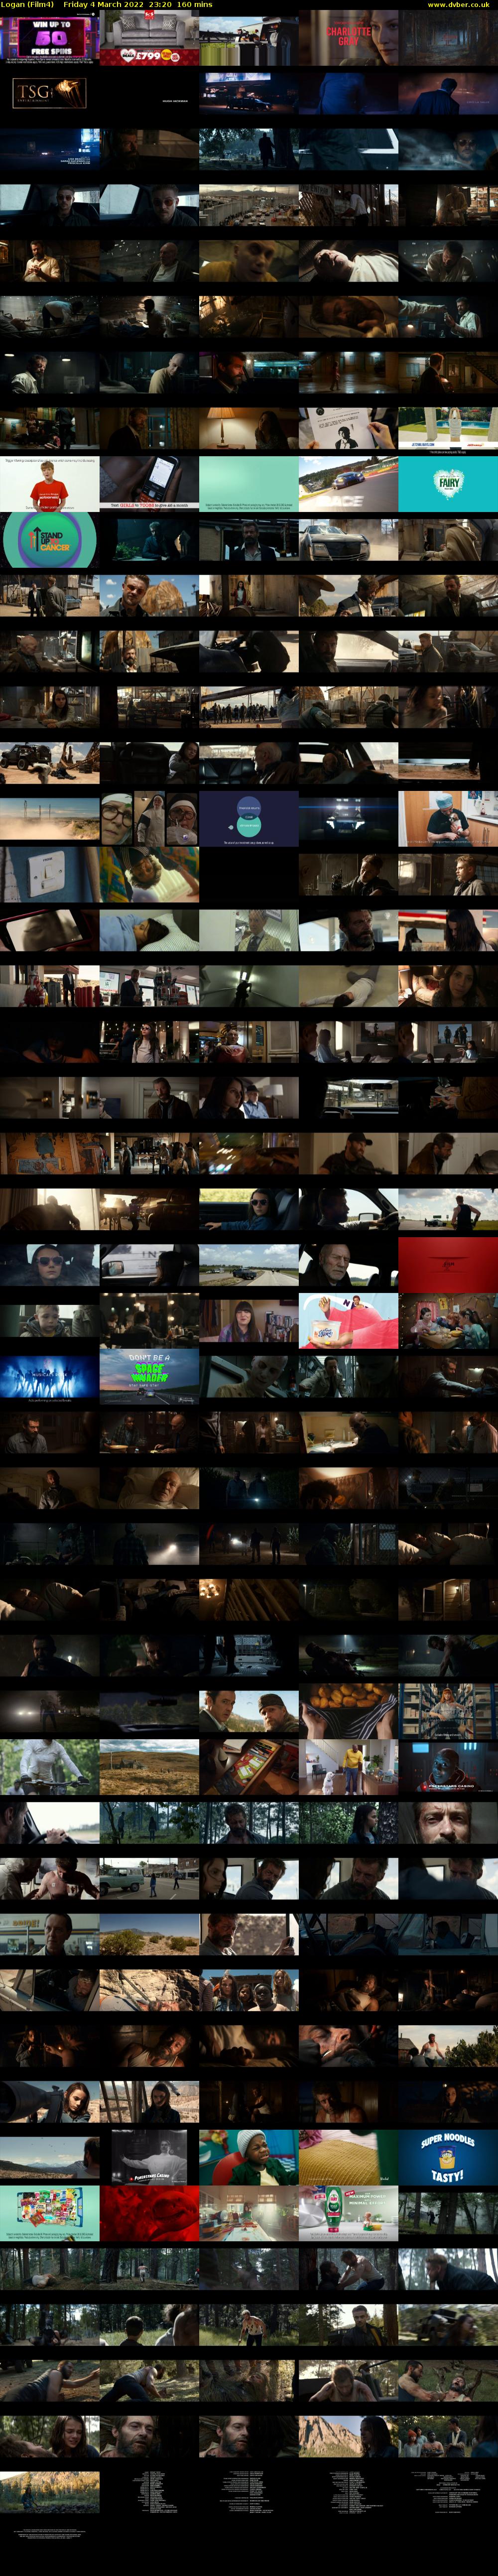 Logan (Film4) Friday 4 March 2022 23:20 - 02:00